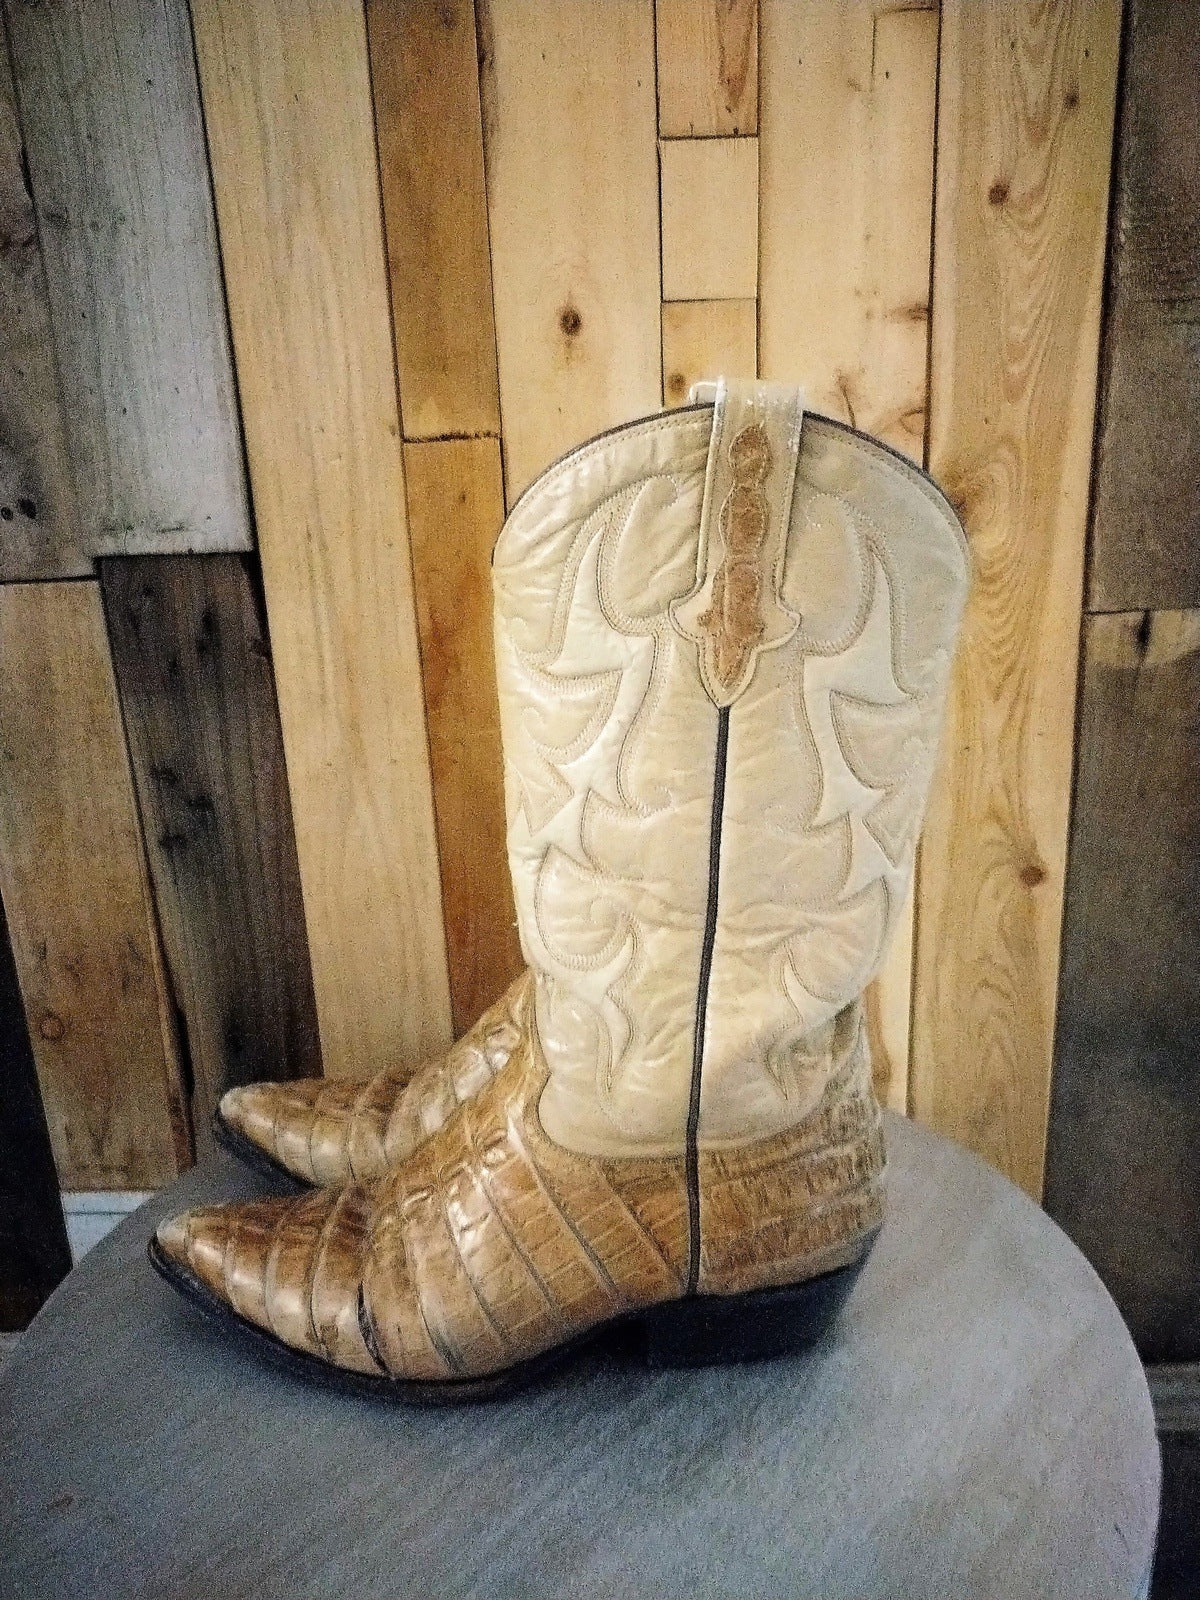 Rudel Men's Boots Size 9 1/2